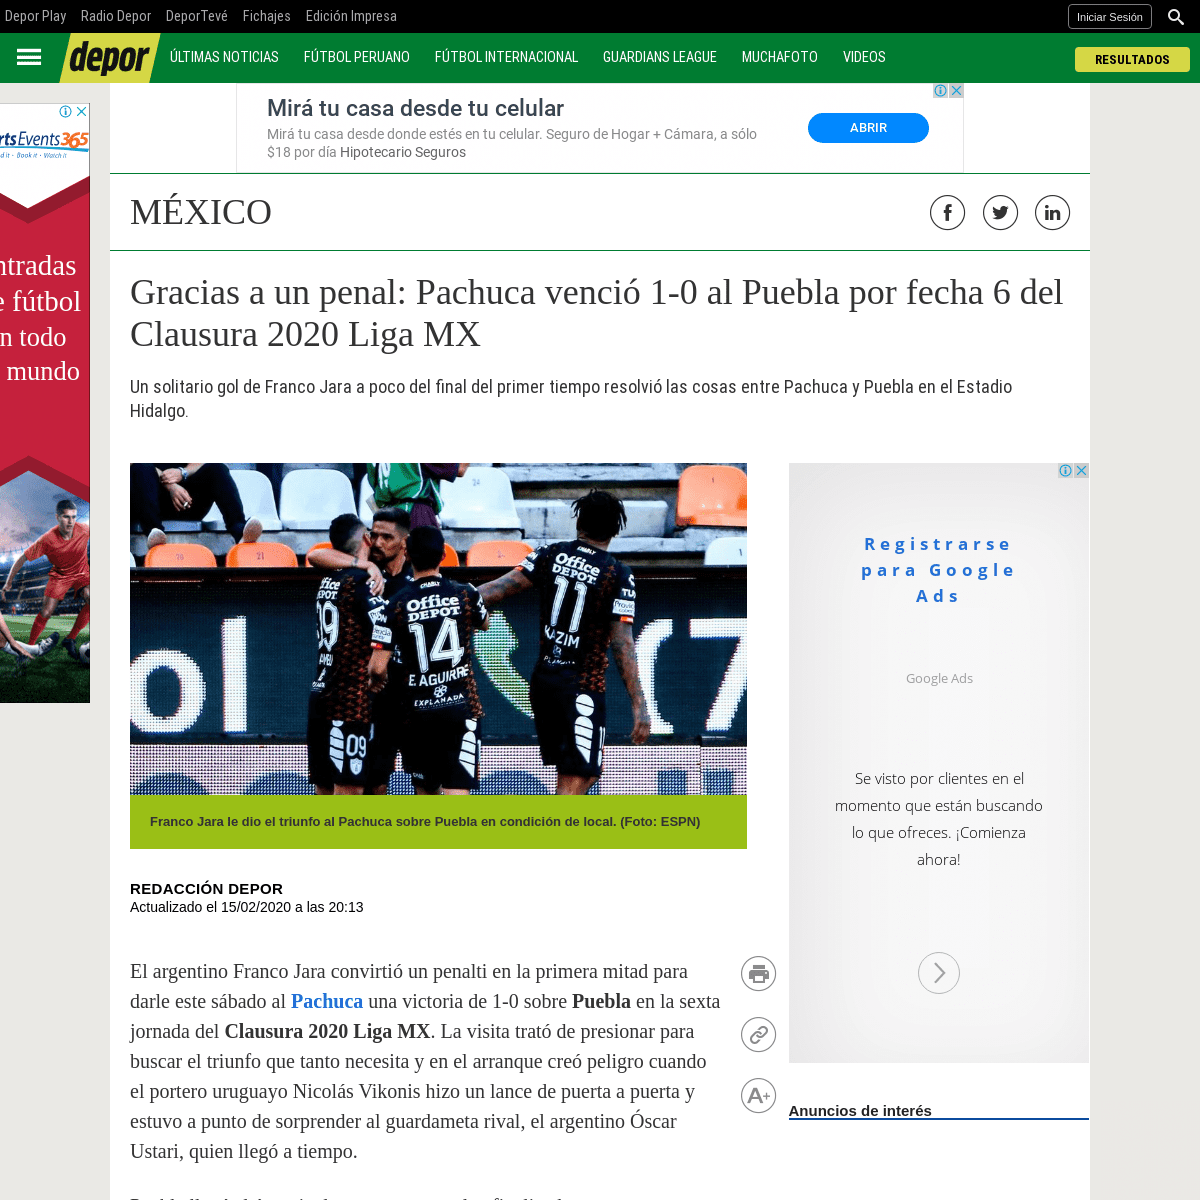 A complete backup of depor.com/futbol-internacional/mexico/ver-aqui-gratis-pachuca-vs-puebla-en-vivo-en-directo-online-tv-fox-sp